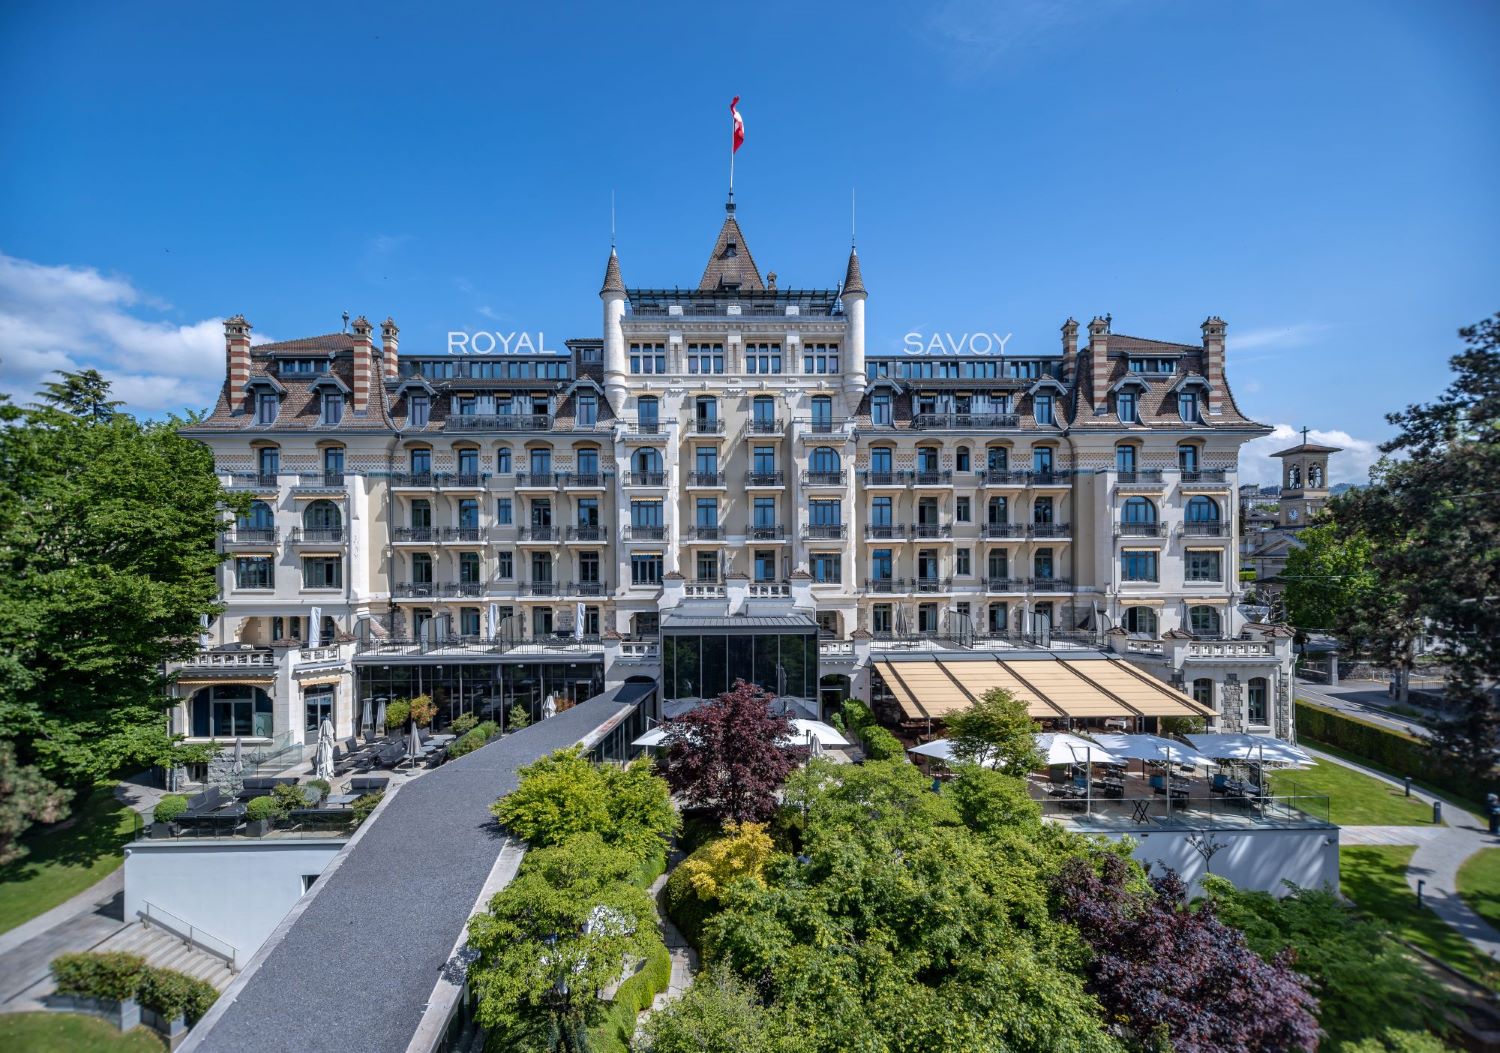 Bienvenue au Royal Savoy Hôtel & Spa Lausanne, luxueux hôtel 5 étoiles situé dans la charmante ville de Lausanne.